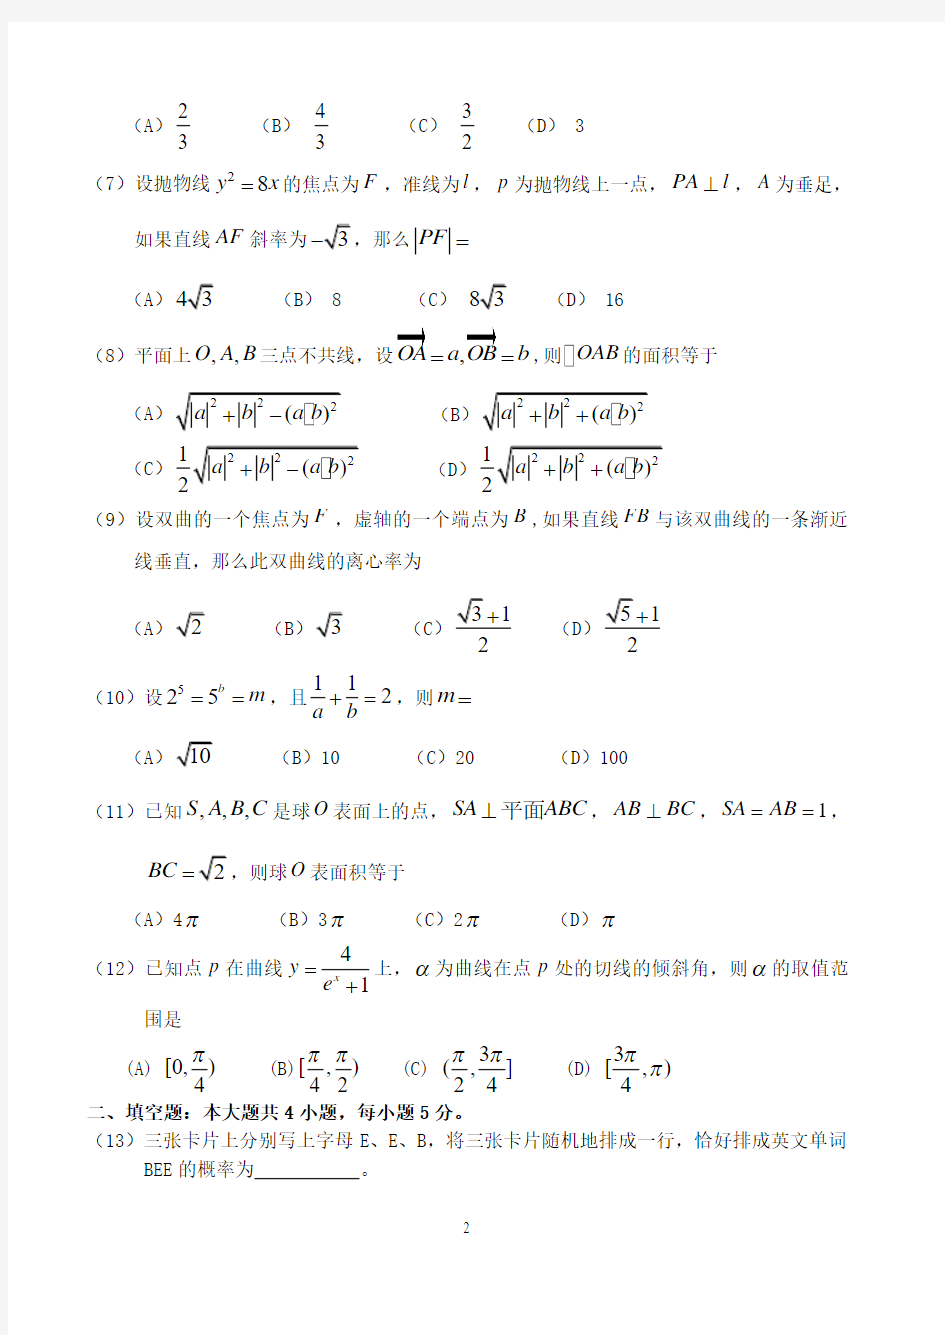 2010年高考数学(文)试题及答案(辽宁卷)